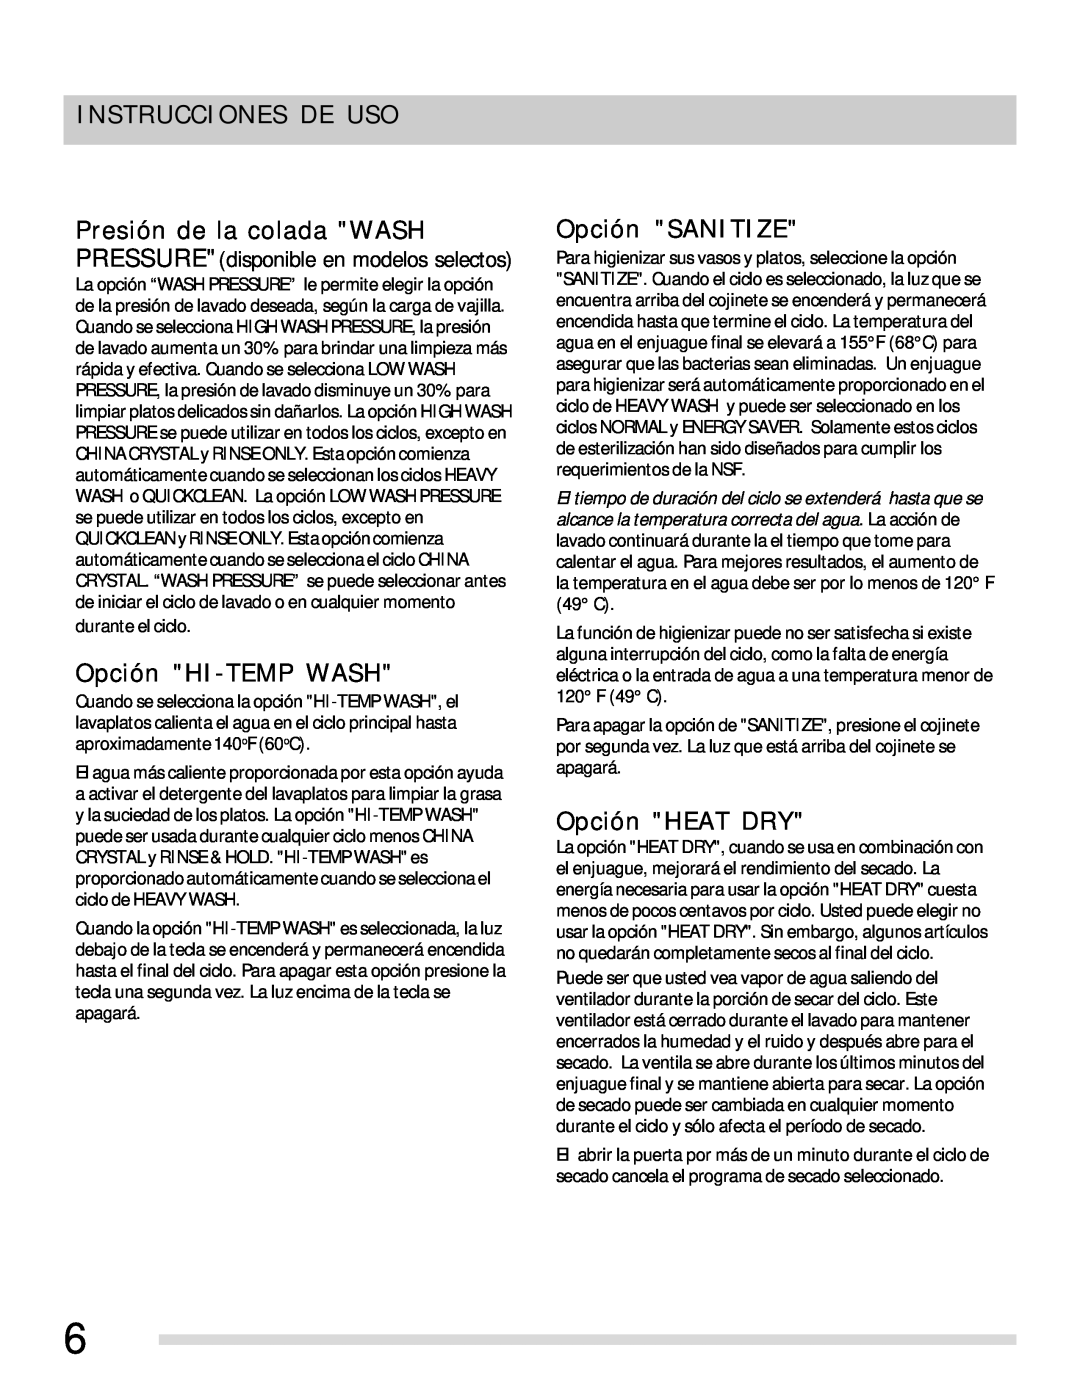 Frigidaire 154768703 manual Instrucciones De Uso, Opción HI-TEMP WASH, Opción SANITIZE, Opción HEAT DRY 